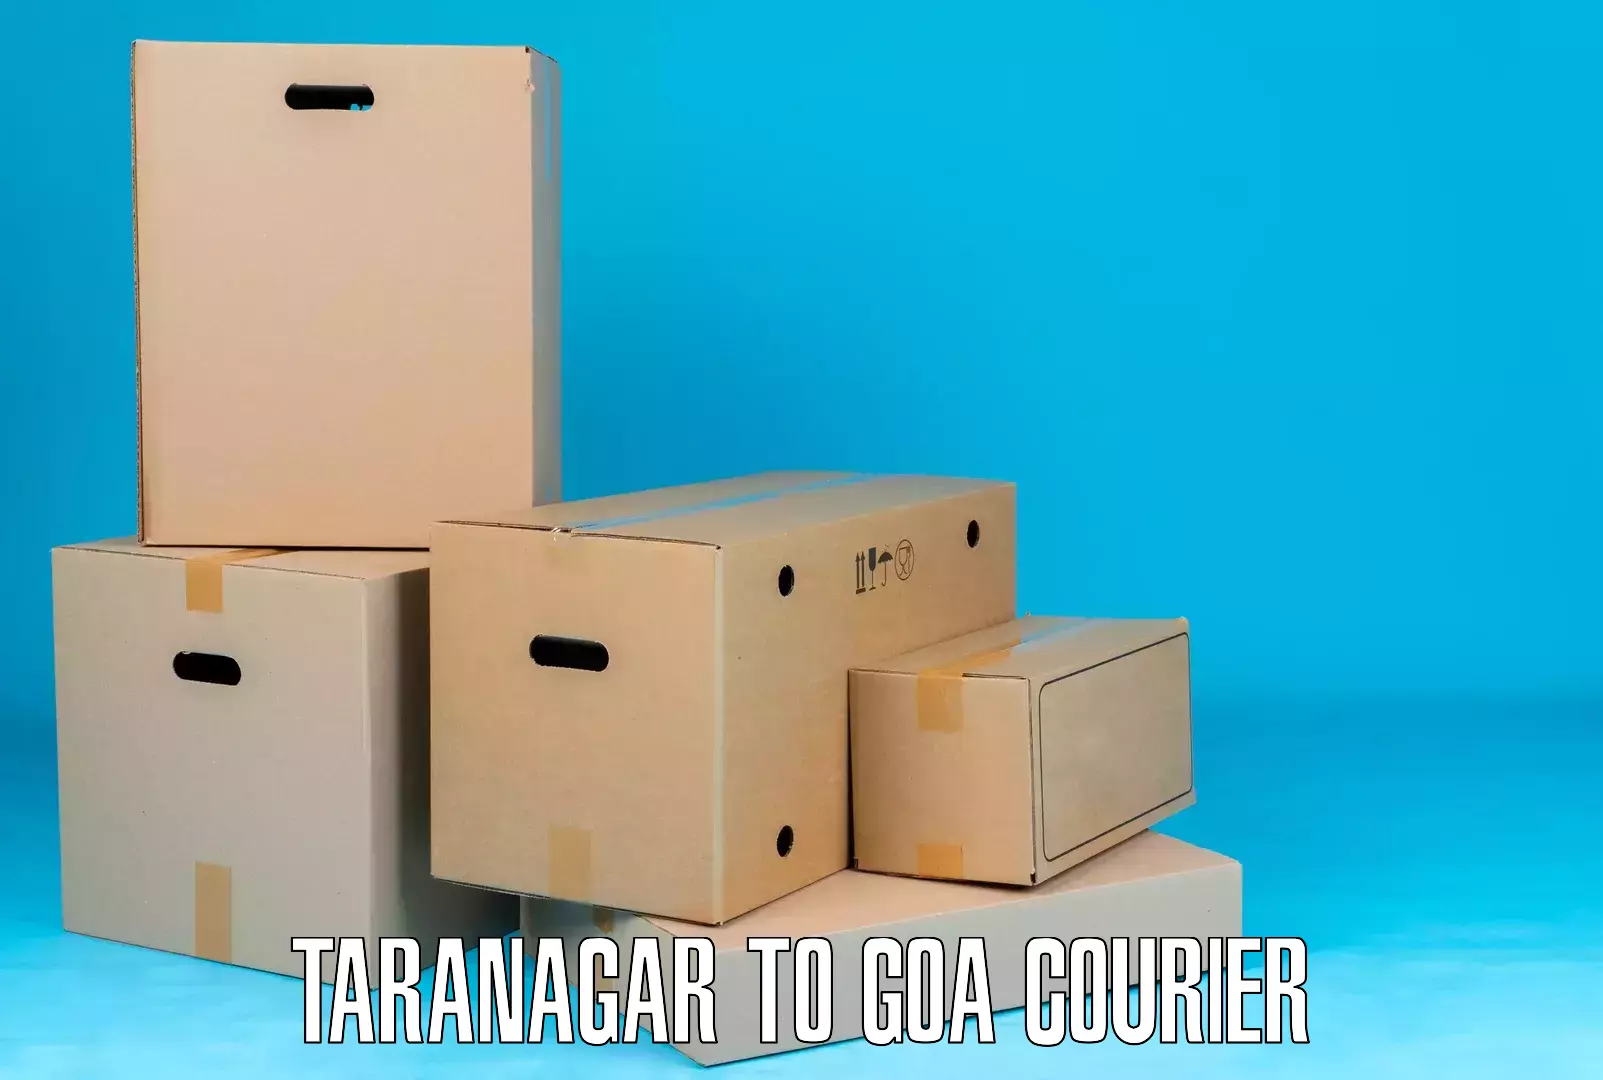 Door-to-door freight service Taranagar to Goa